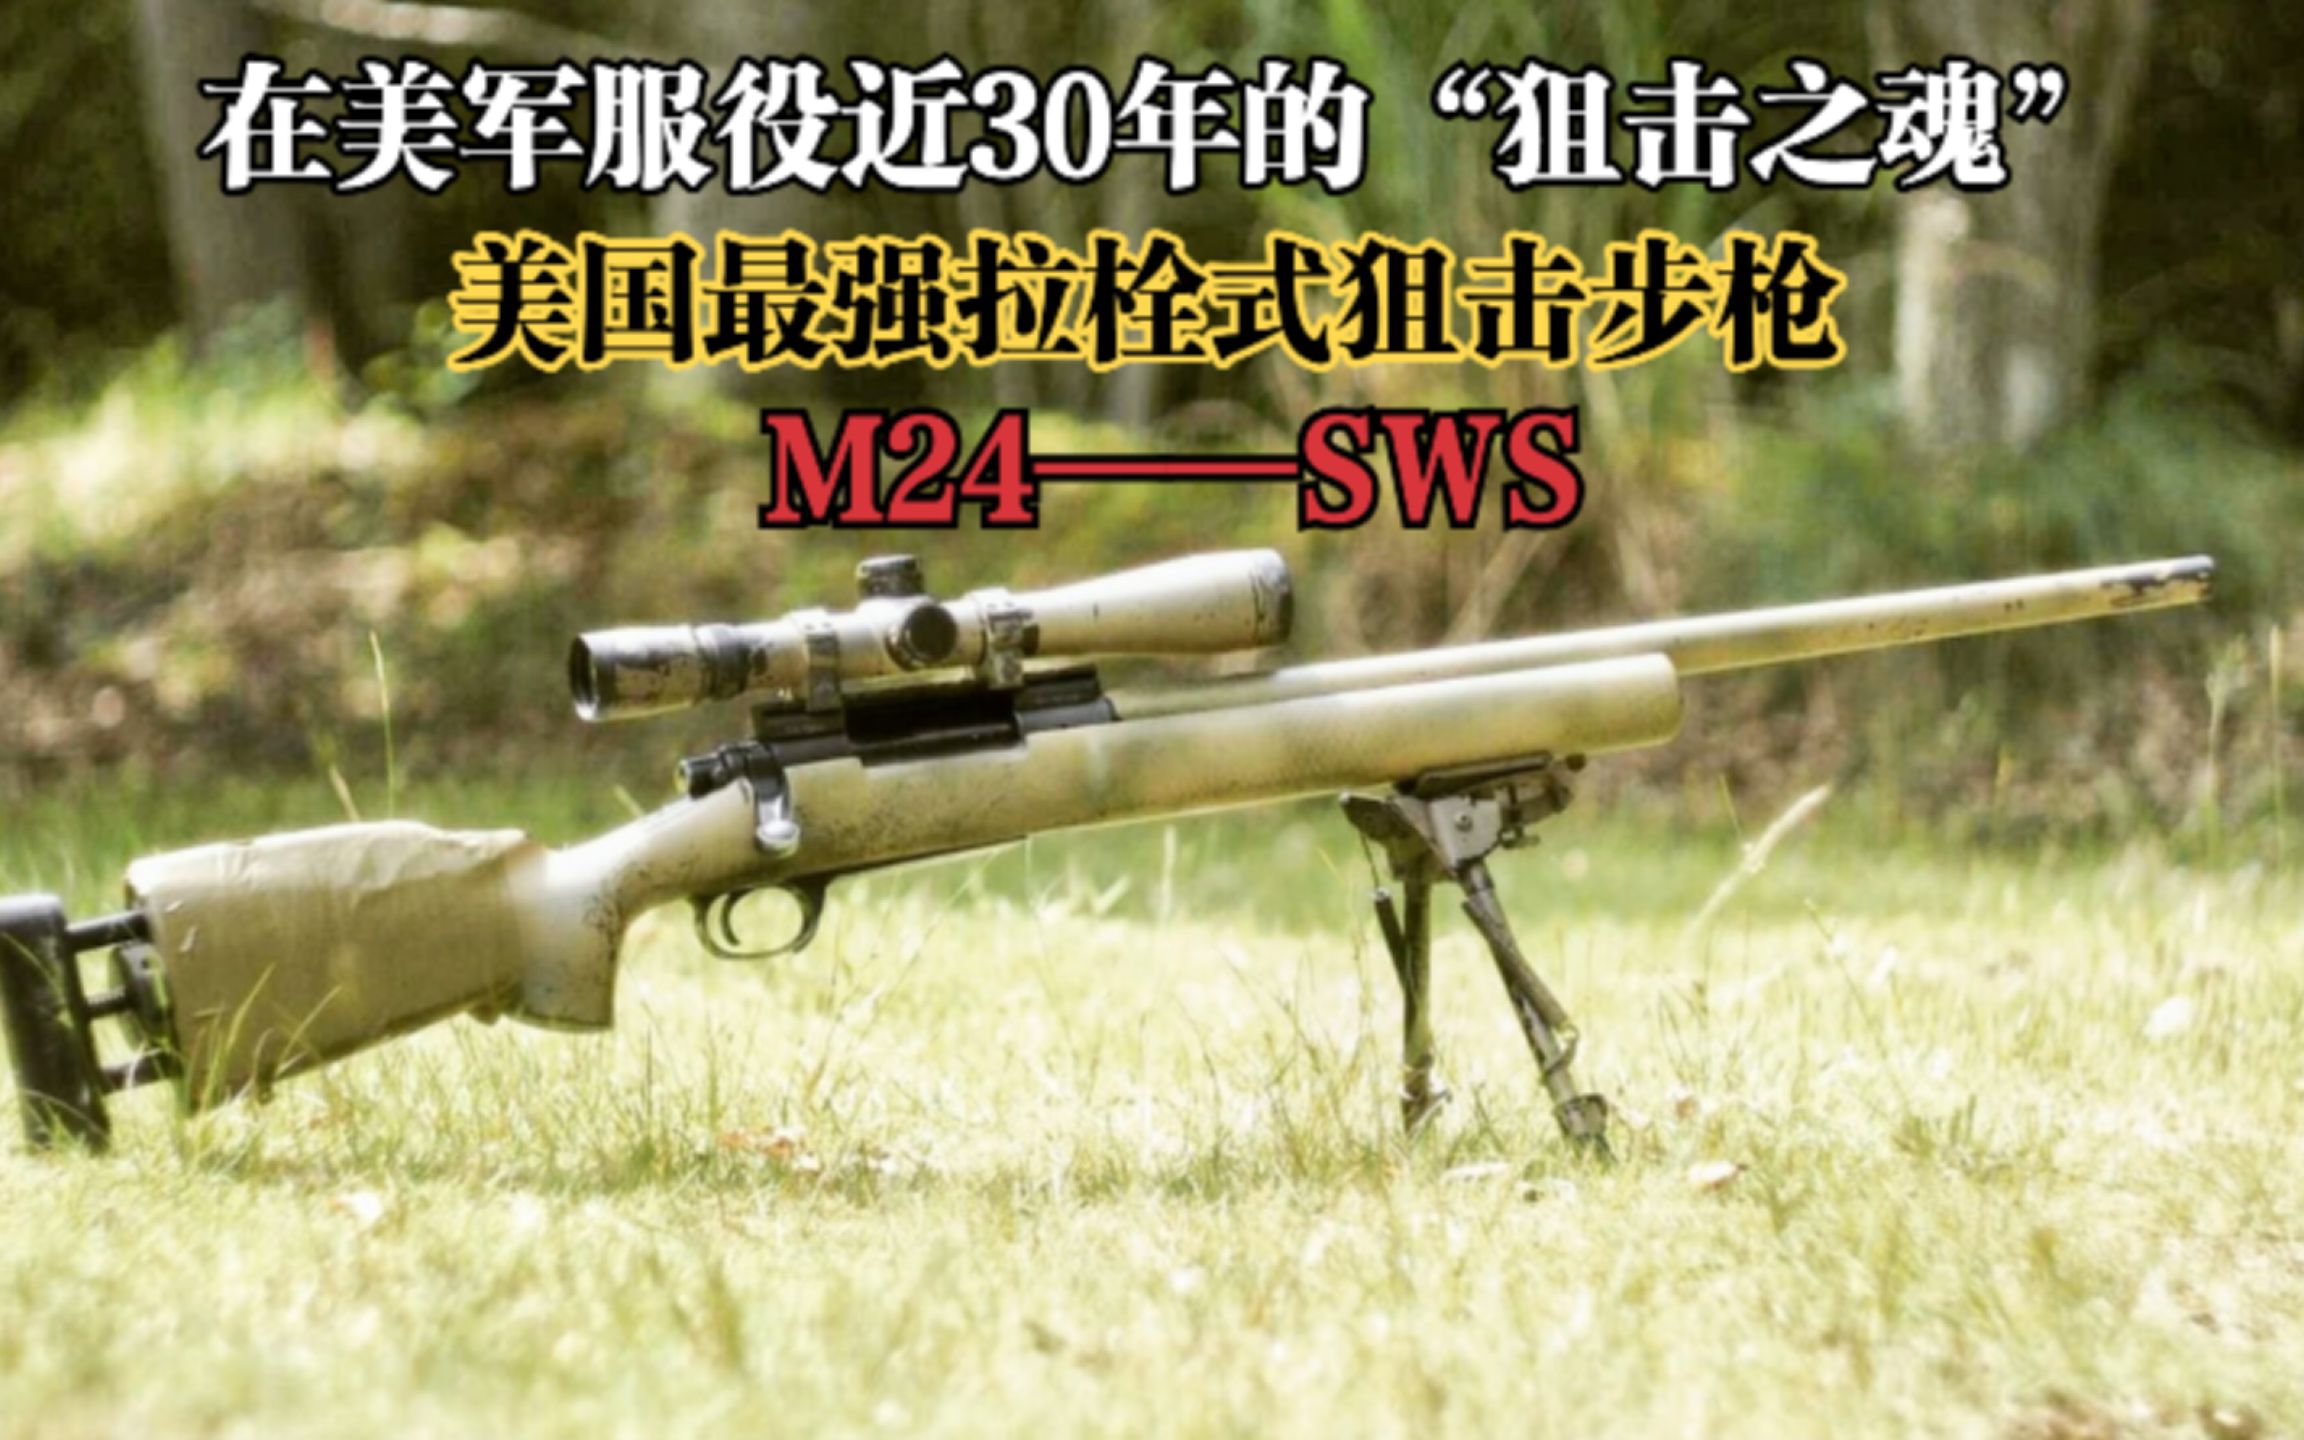 【科普哏】美国最强拉栓式狙击步枪“M24狙击步”，到底有哪些过人之处？